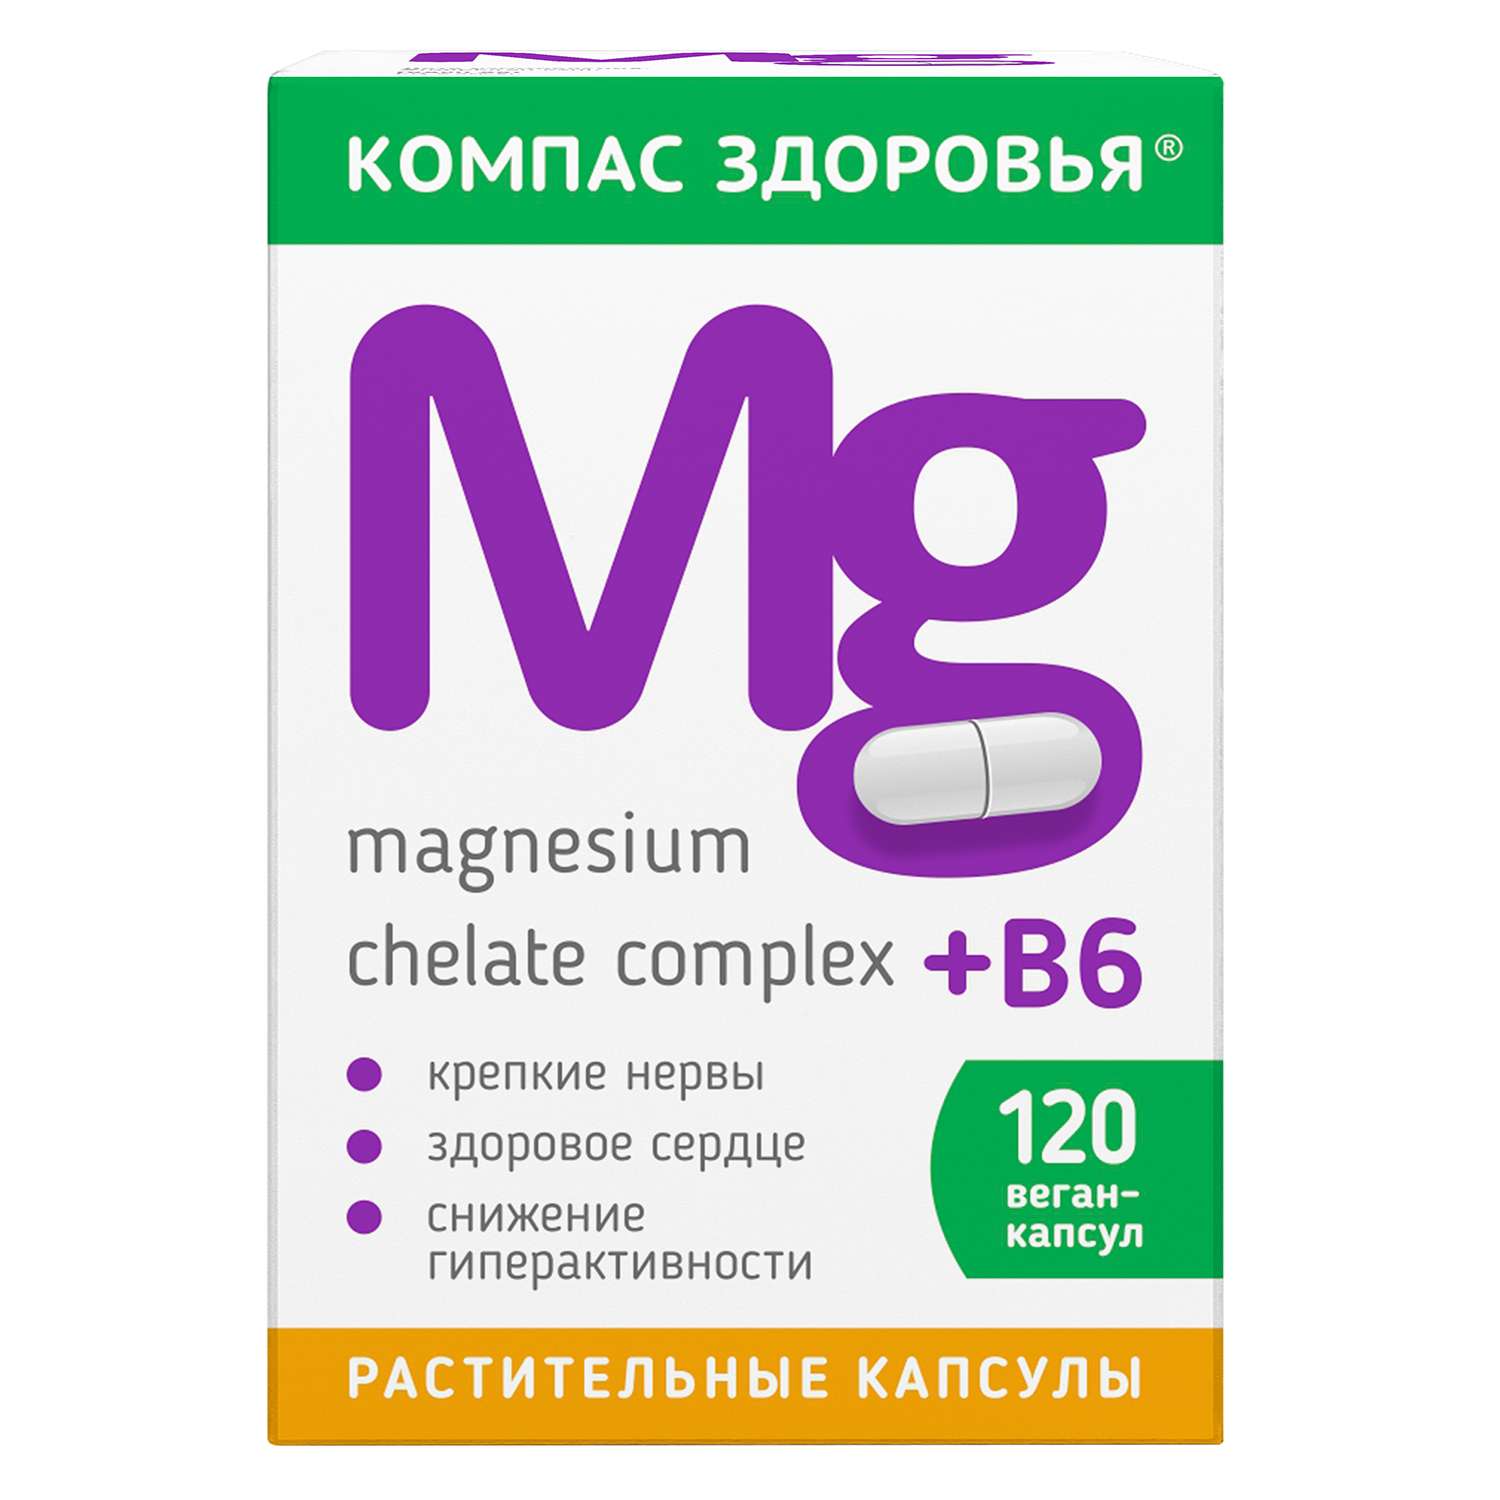 Биологически активная добавка Компас Здоровья Магнезиум В6 33.6г - фото 2